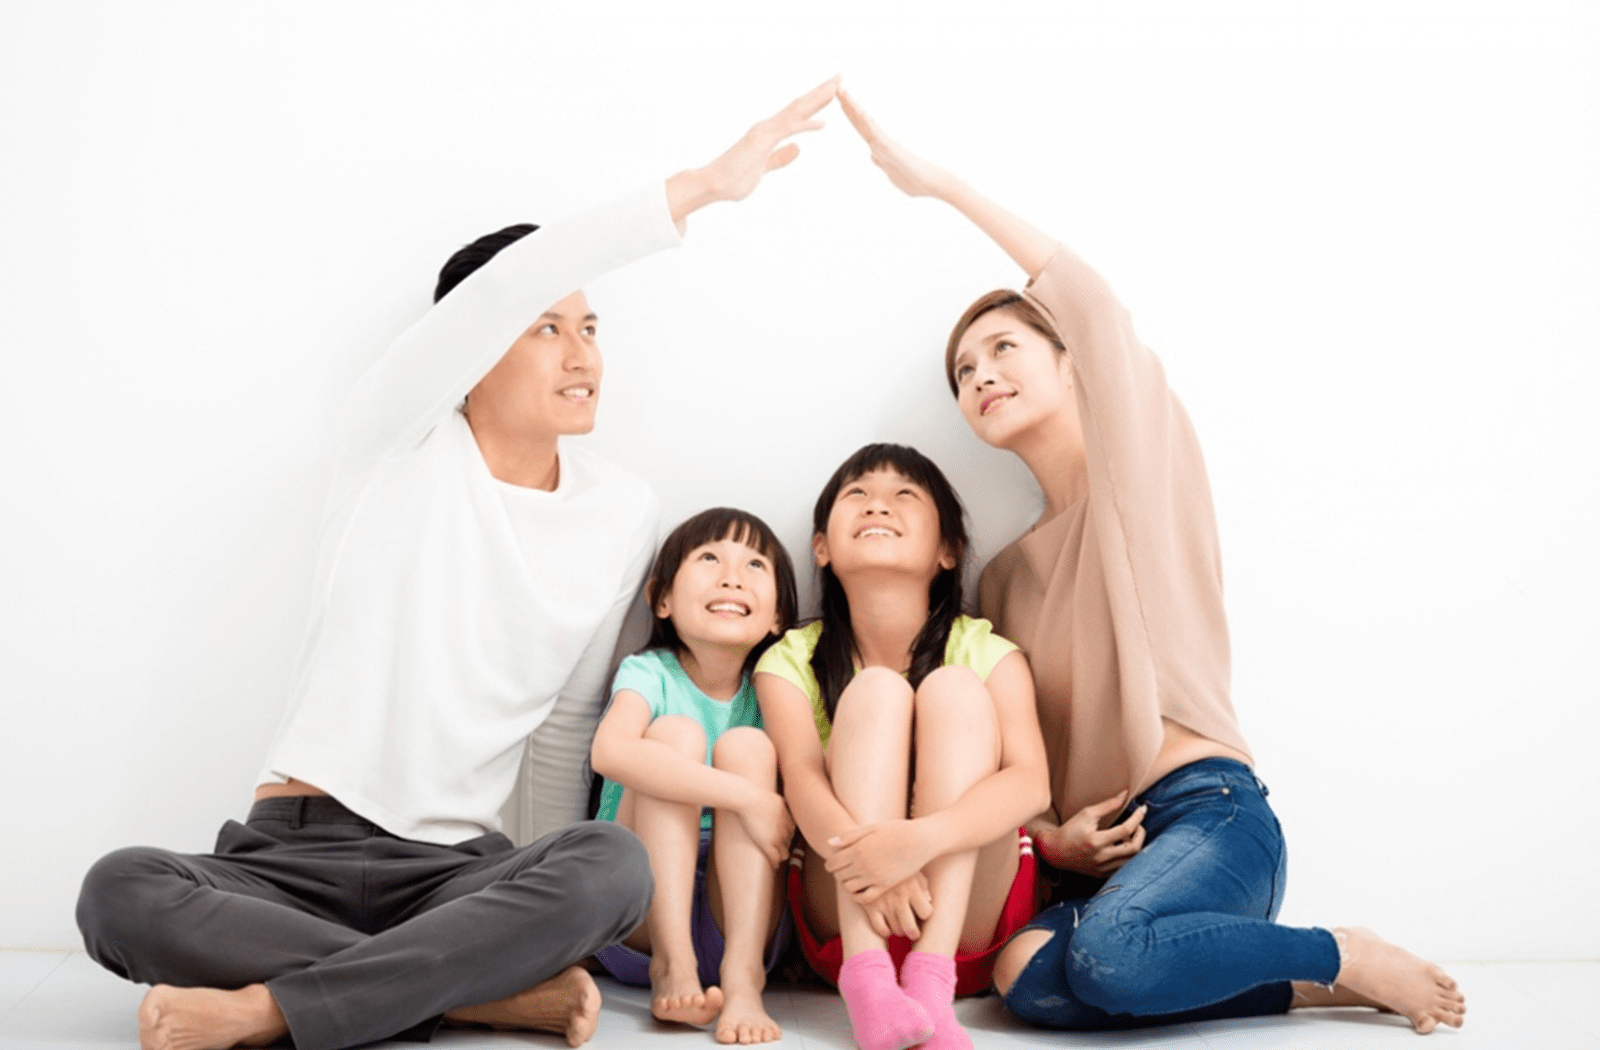 Tham khảo ngay bí quyết giúp bạn có thể giữ gìn hạnh phúc gia đình